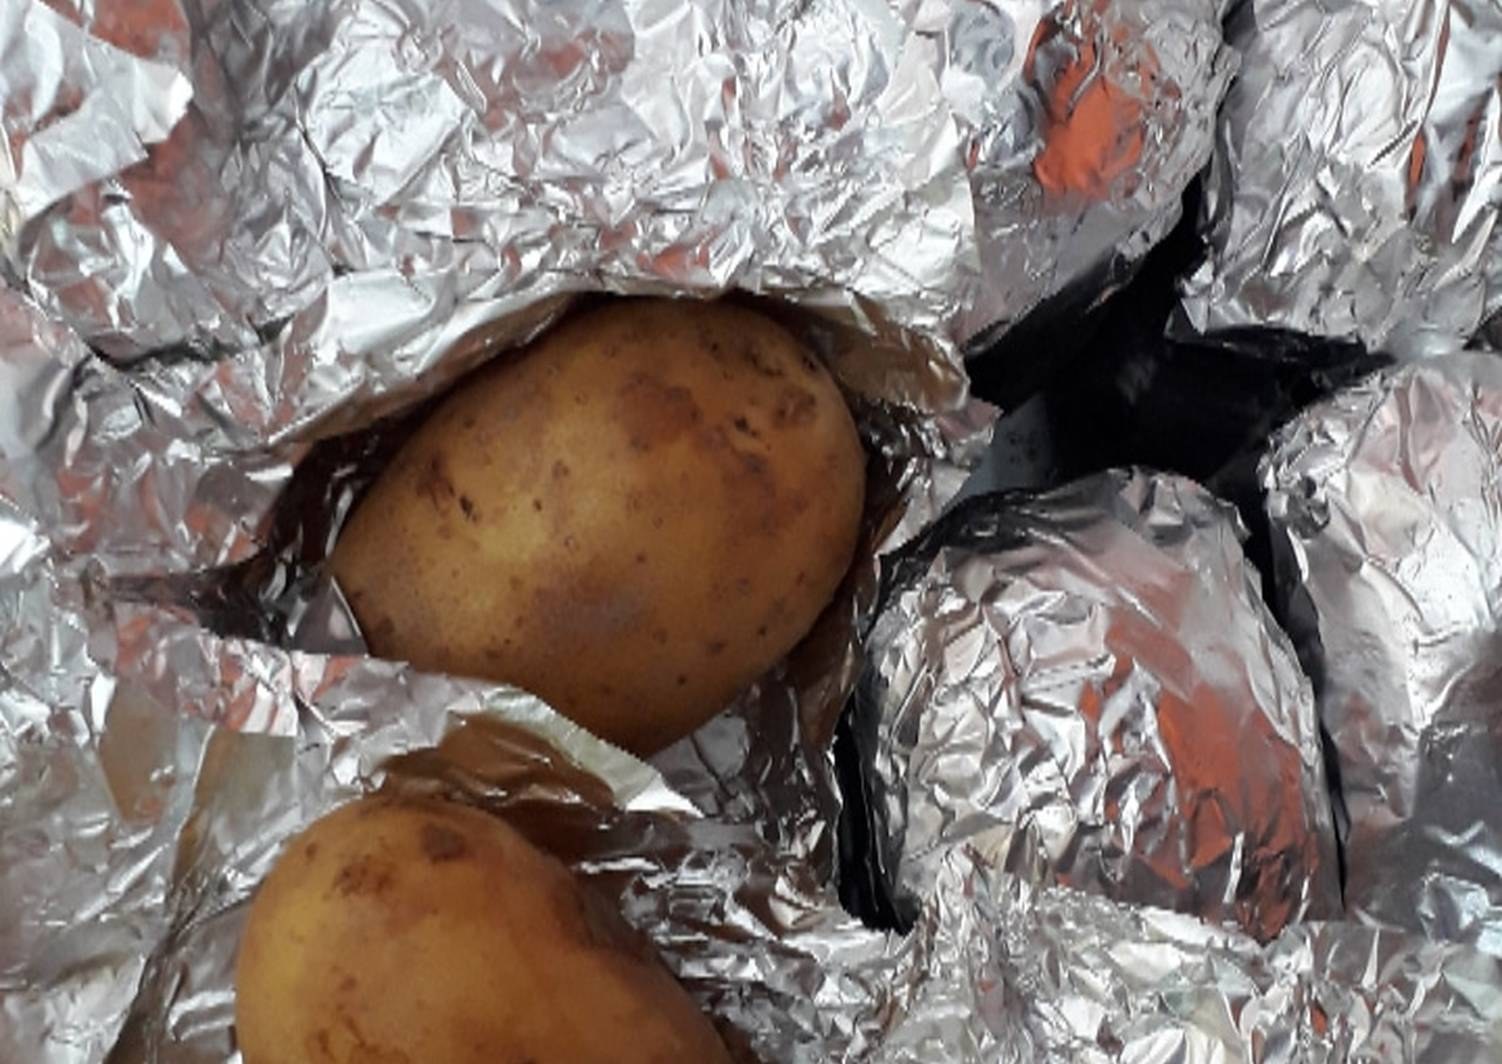 картошка в фольге в духовке фото